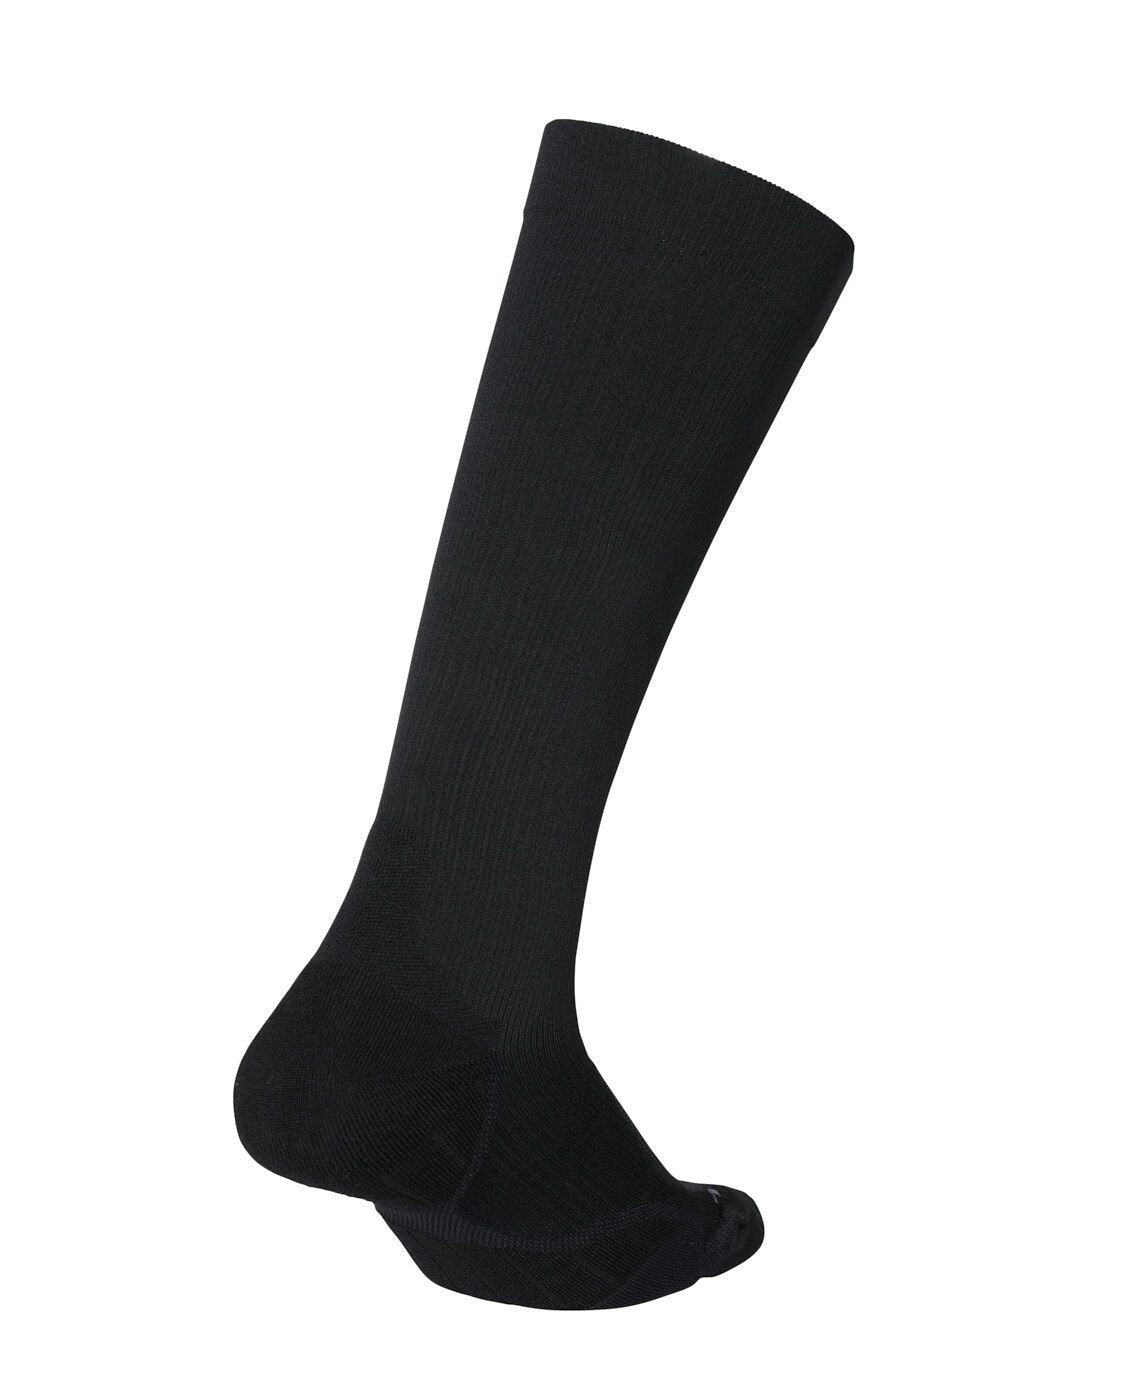 2XU SA - Flight Compression Socks - Black/Black